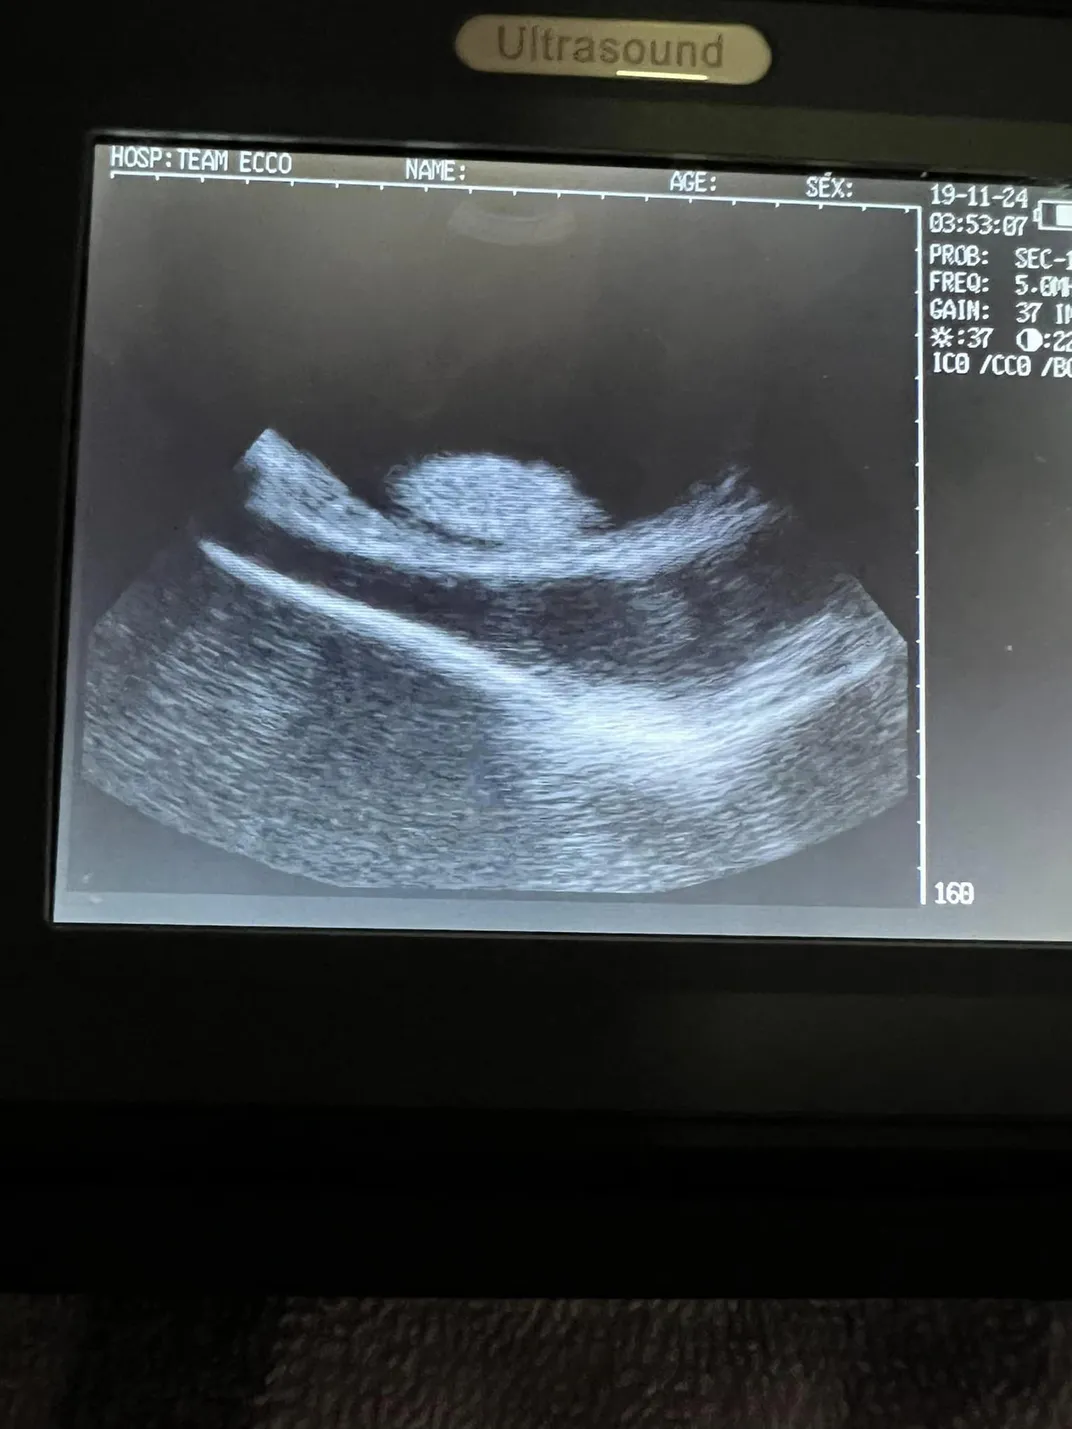 an ultrasound on a screen